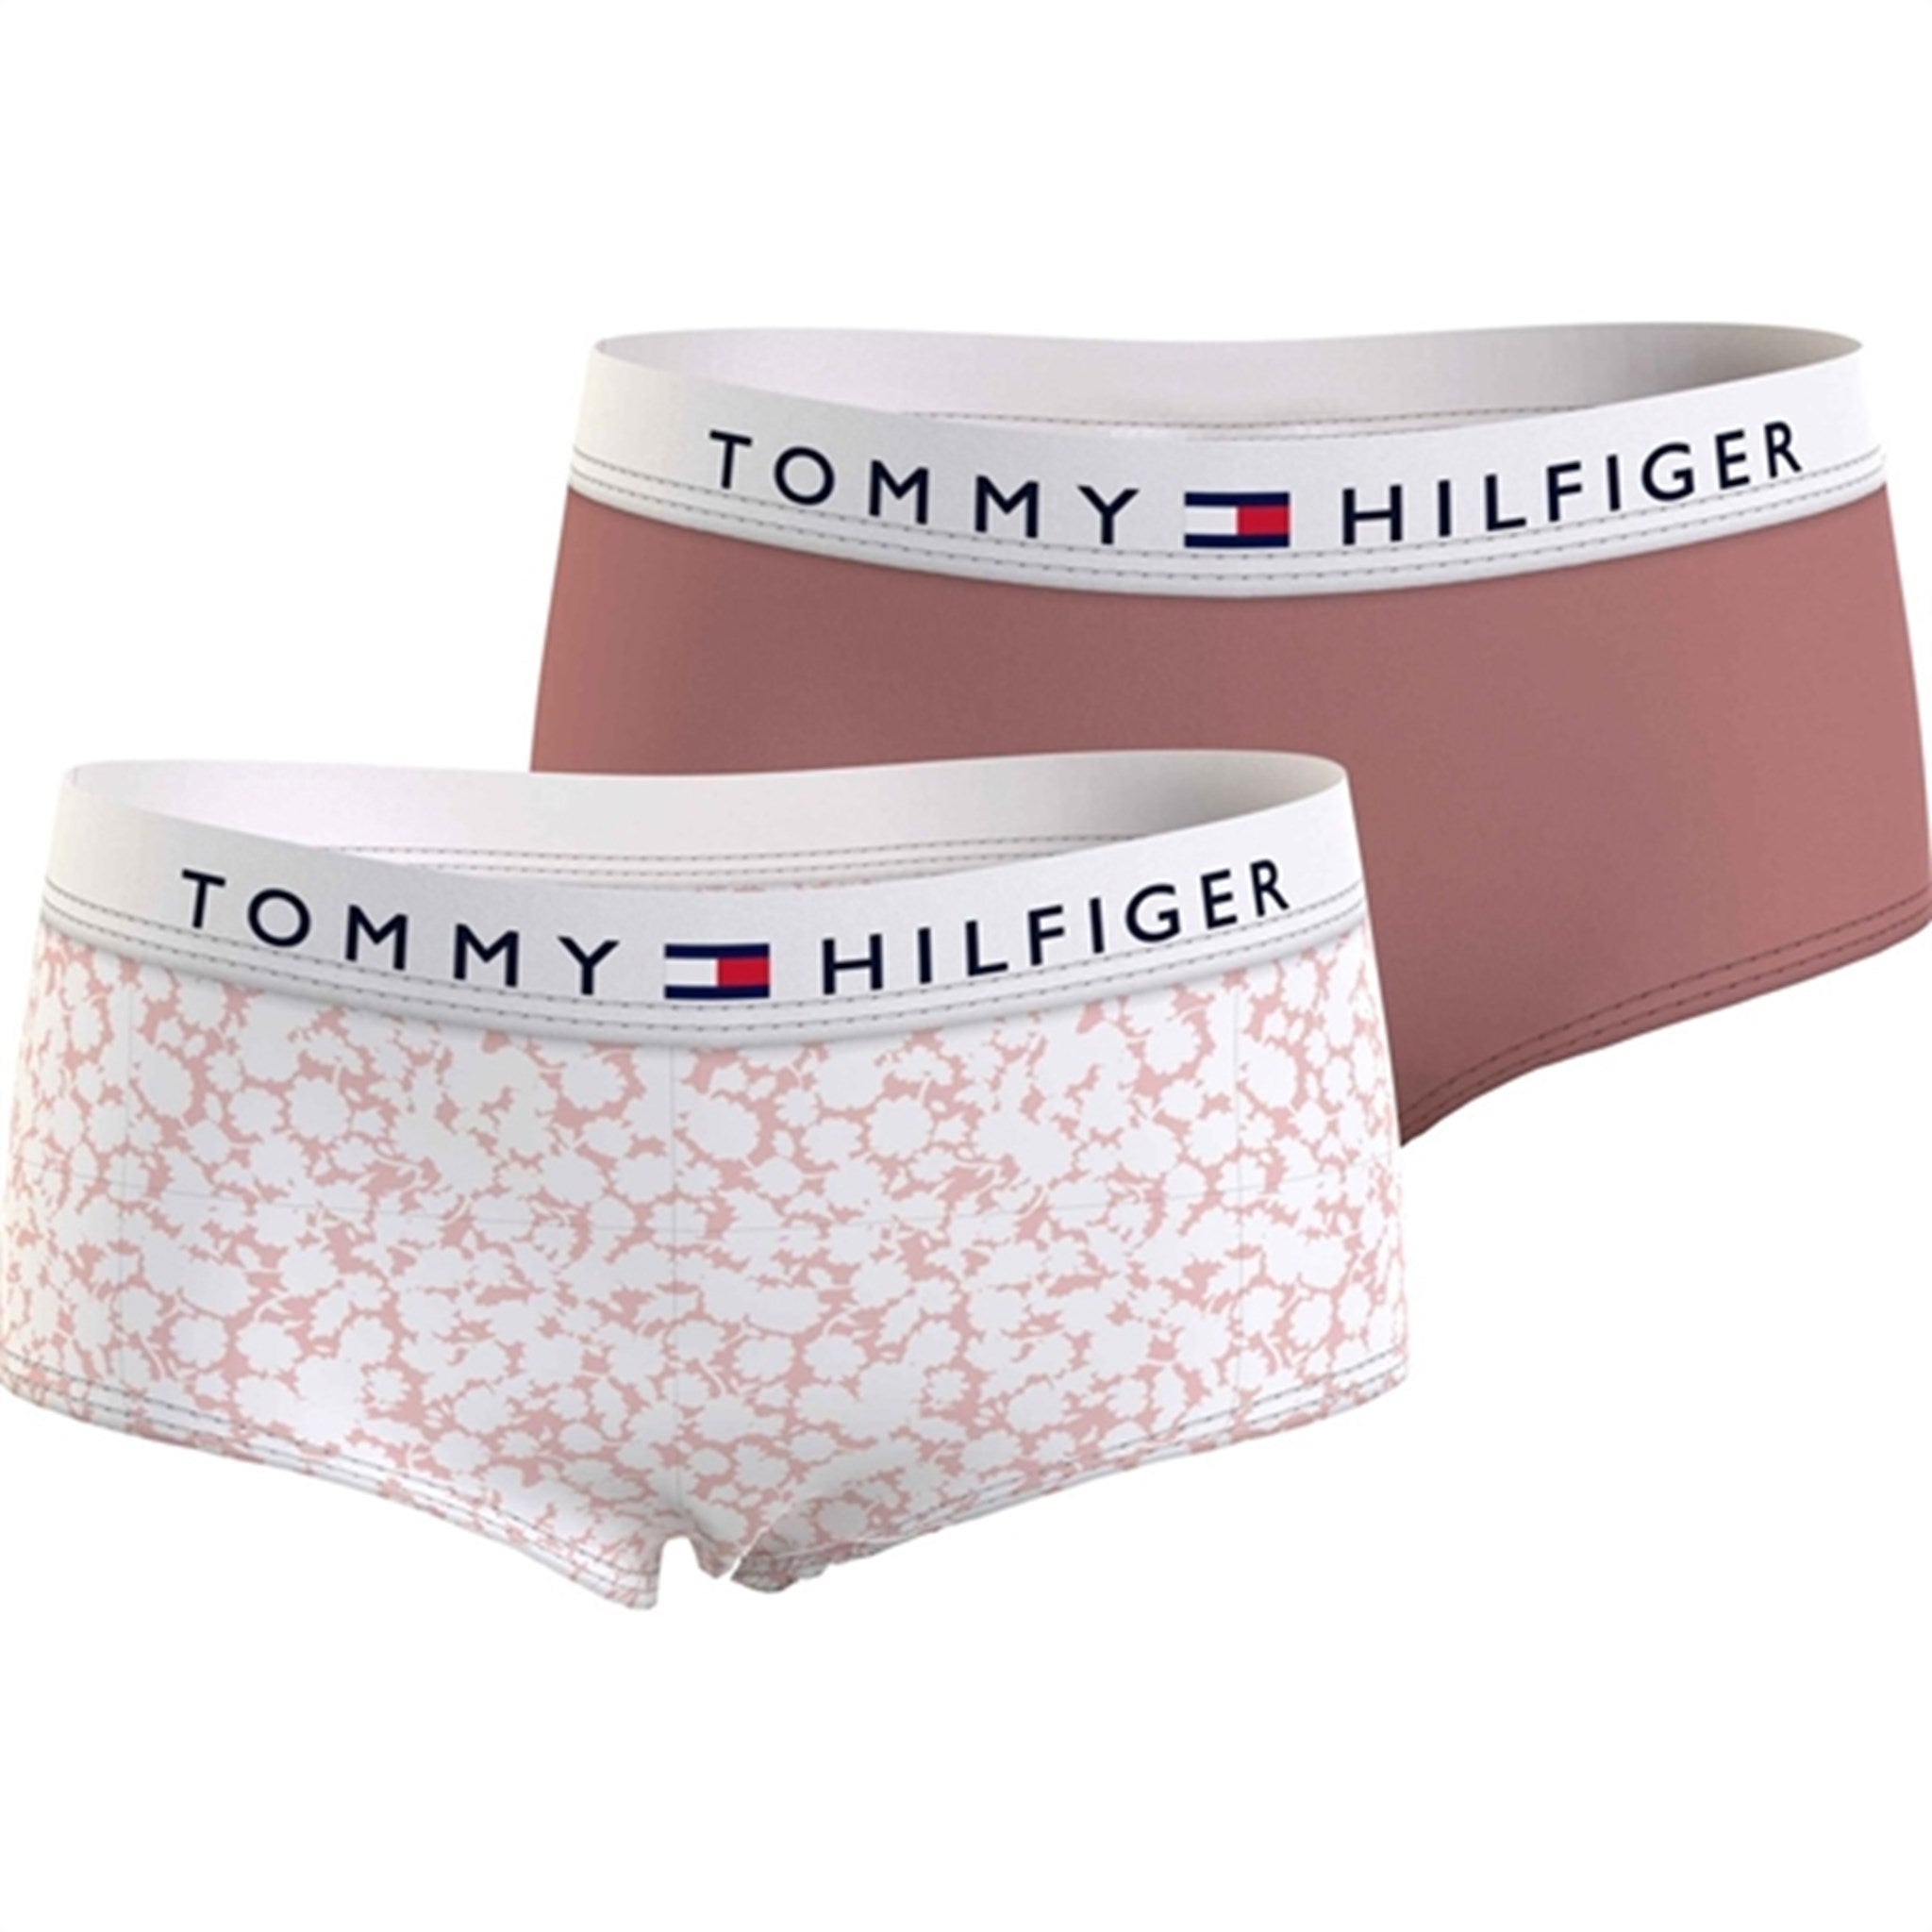 Tommy Hilfiger Underbukser 2-Pak Printed Floral/Teaberry Blossom - Str. 8-10 år